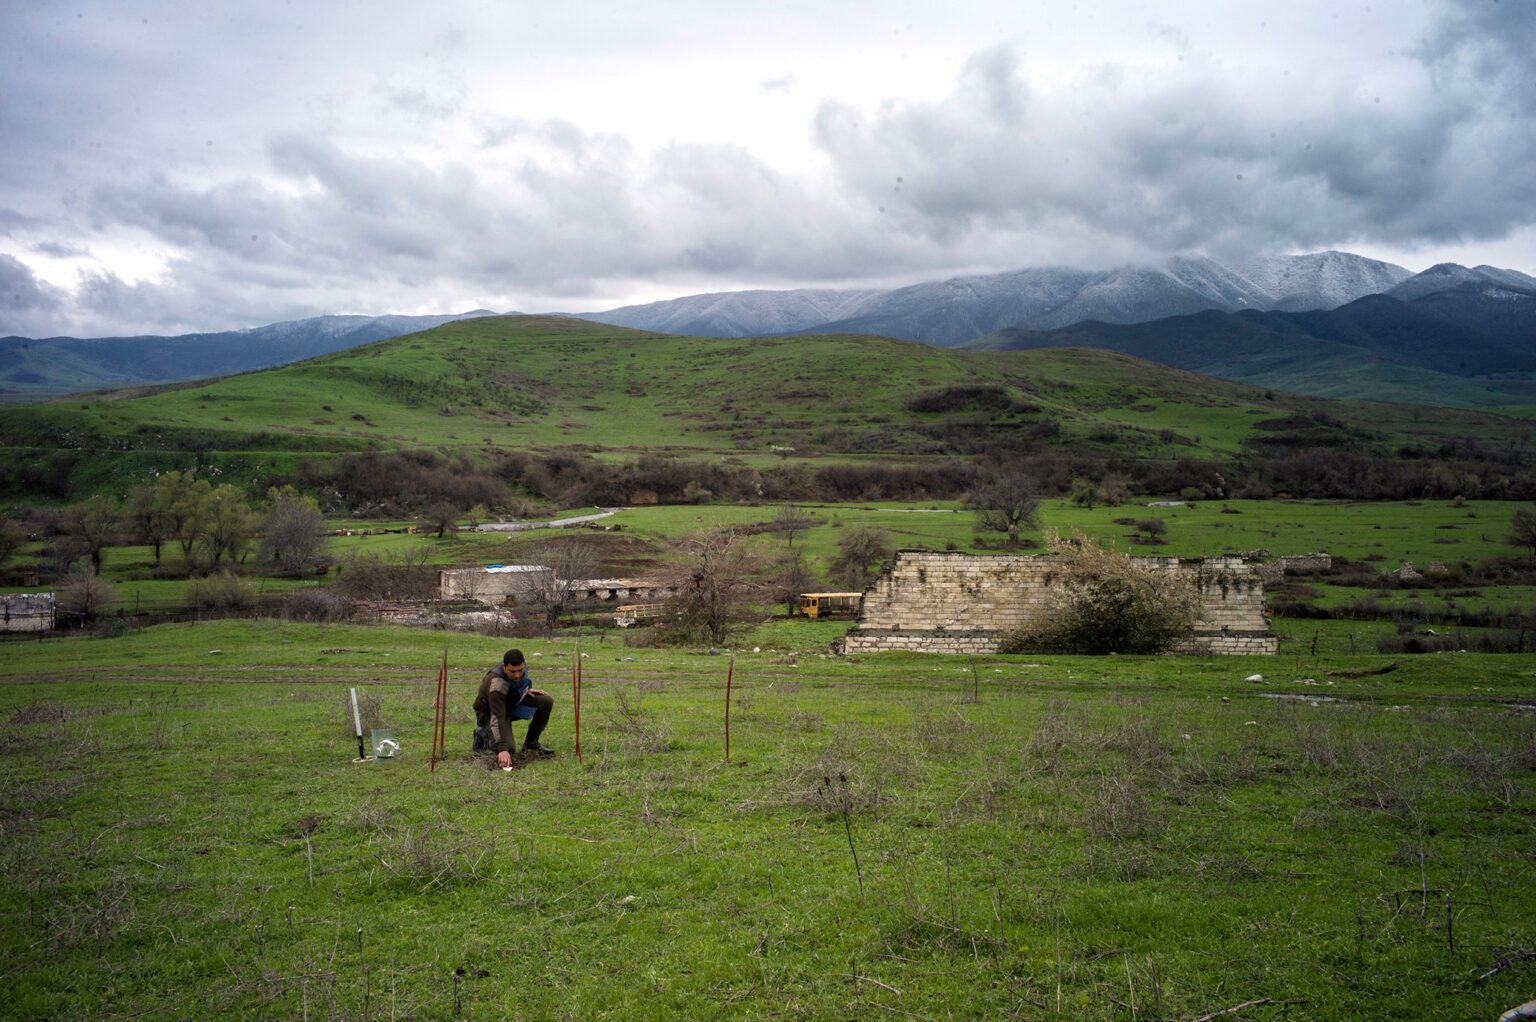 UK to provide £500,000 for demining operations in Karabakh